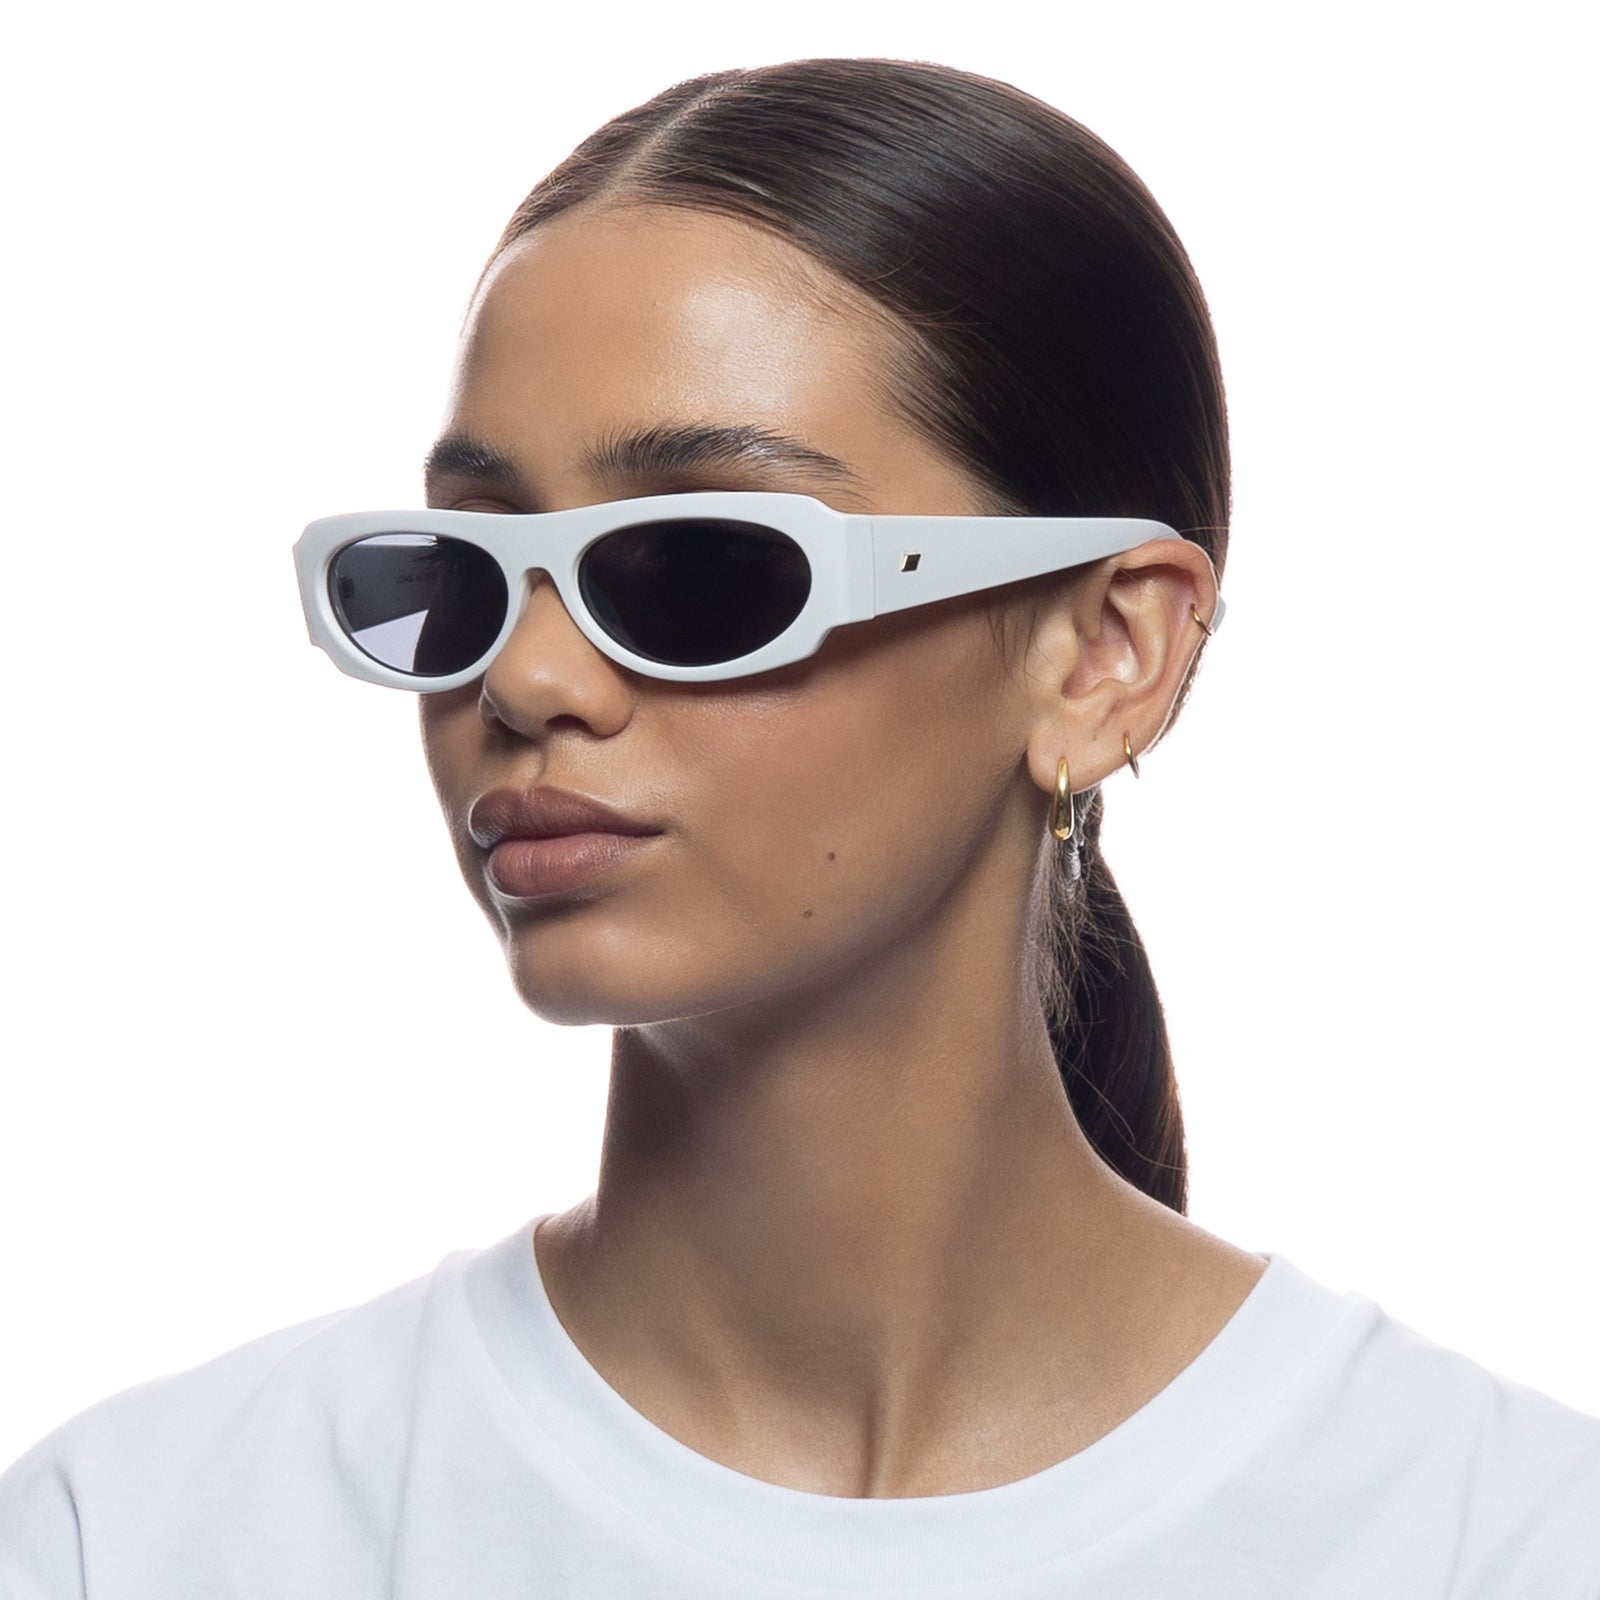 Buy Air Strike Grey Lens Grey & White Frame Stylish Sunglasses For Men Women  Boys & Girls - HCMBO4214 Online